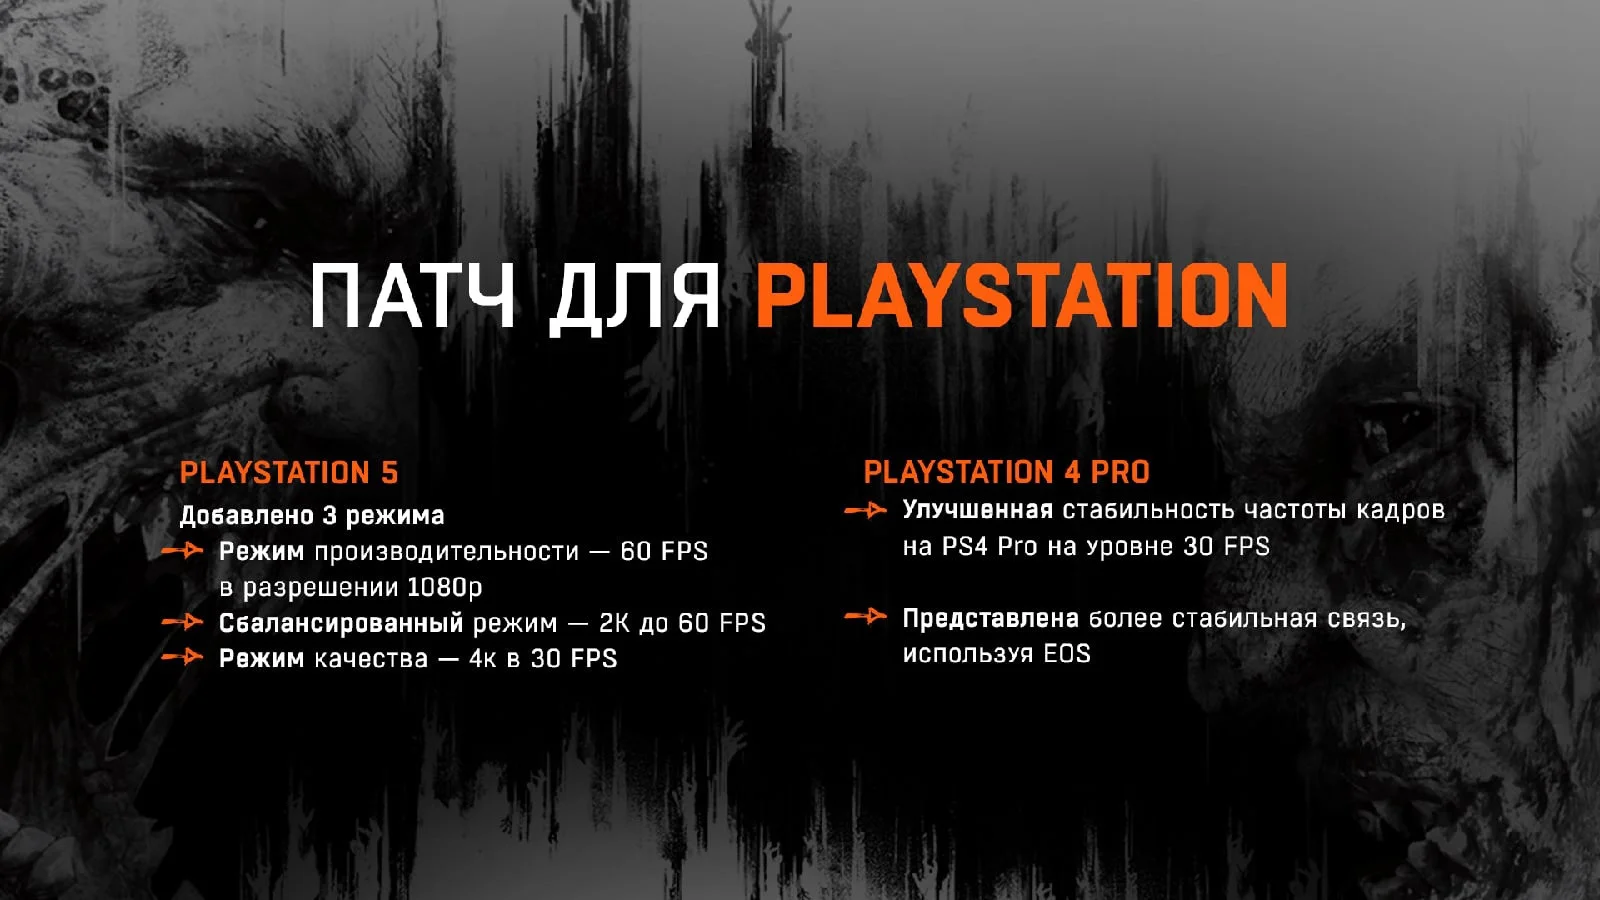 Первая Dying Light получила некстген-обновление с новыми режимами на PS5 - фото 1